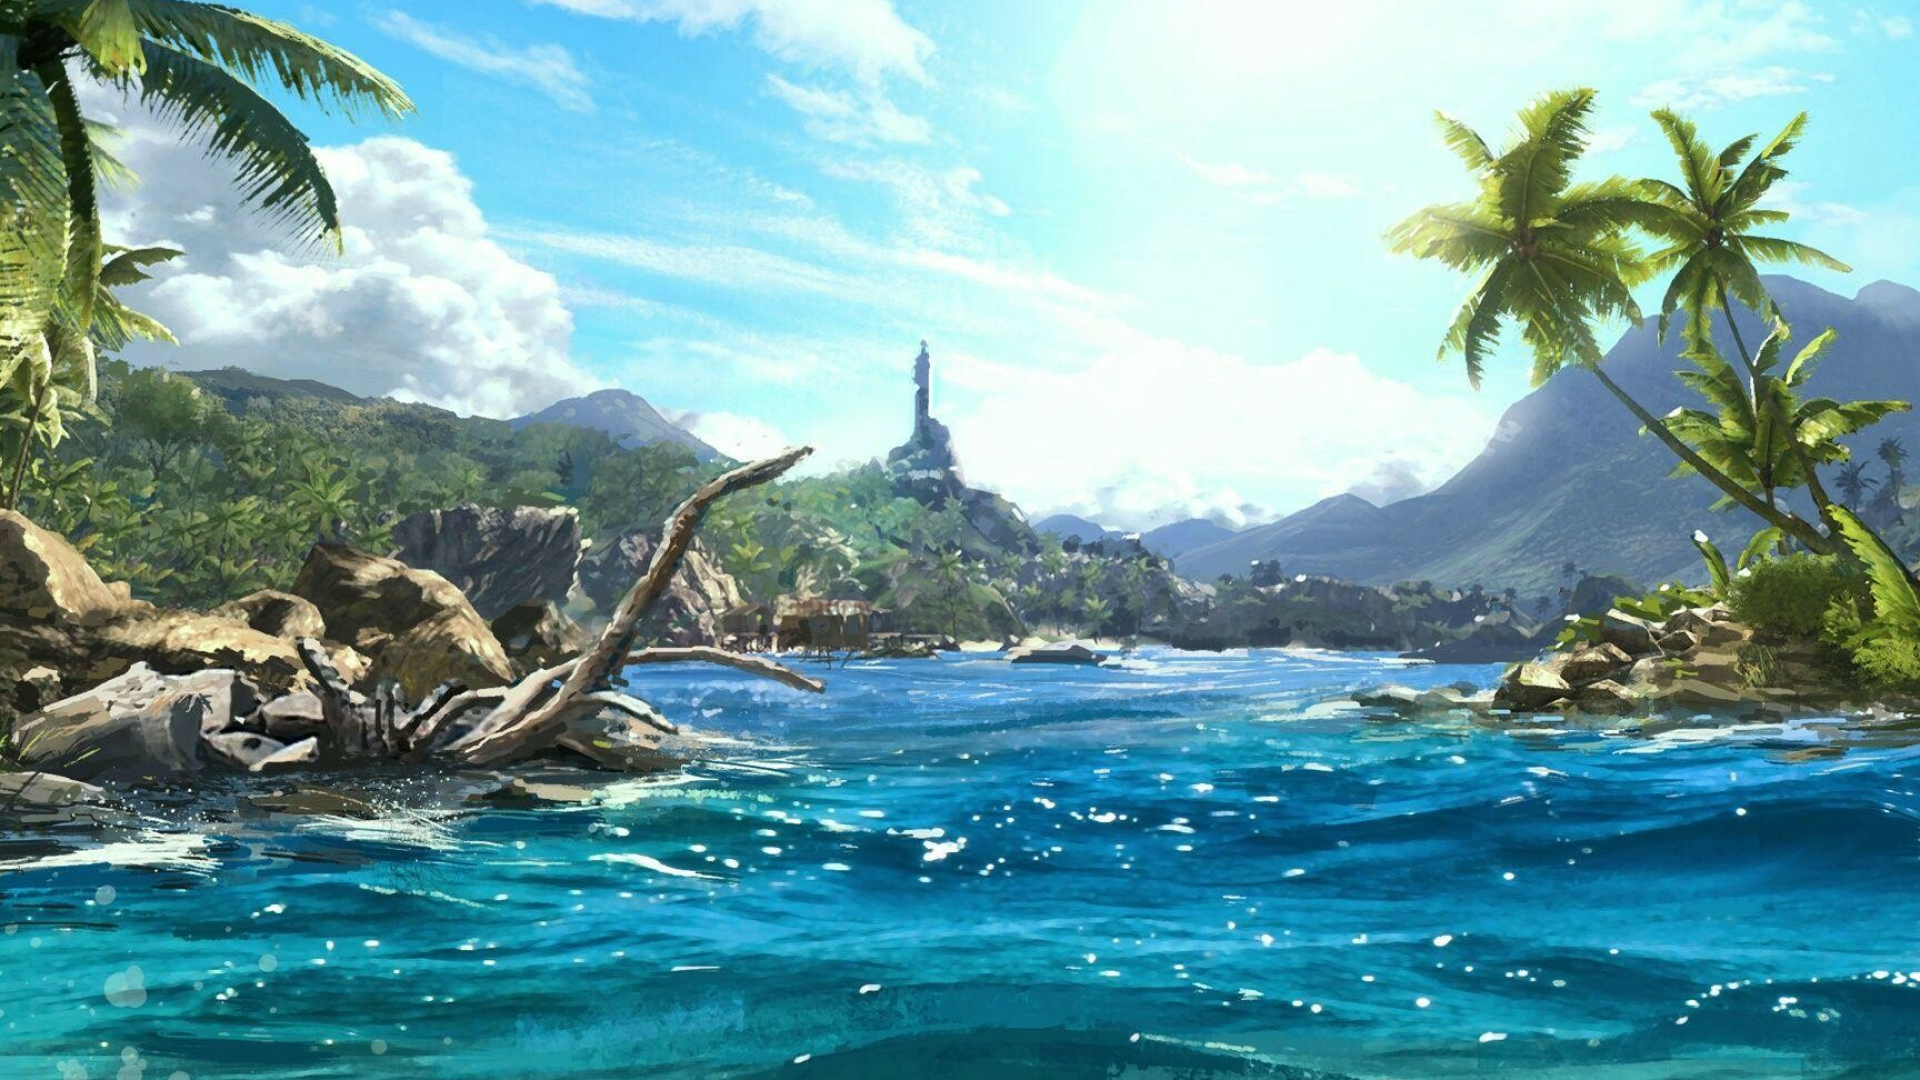 Far Cry 3: An open world first-person shooter set on an island. 1920x1080 Full HD Wallpaper.